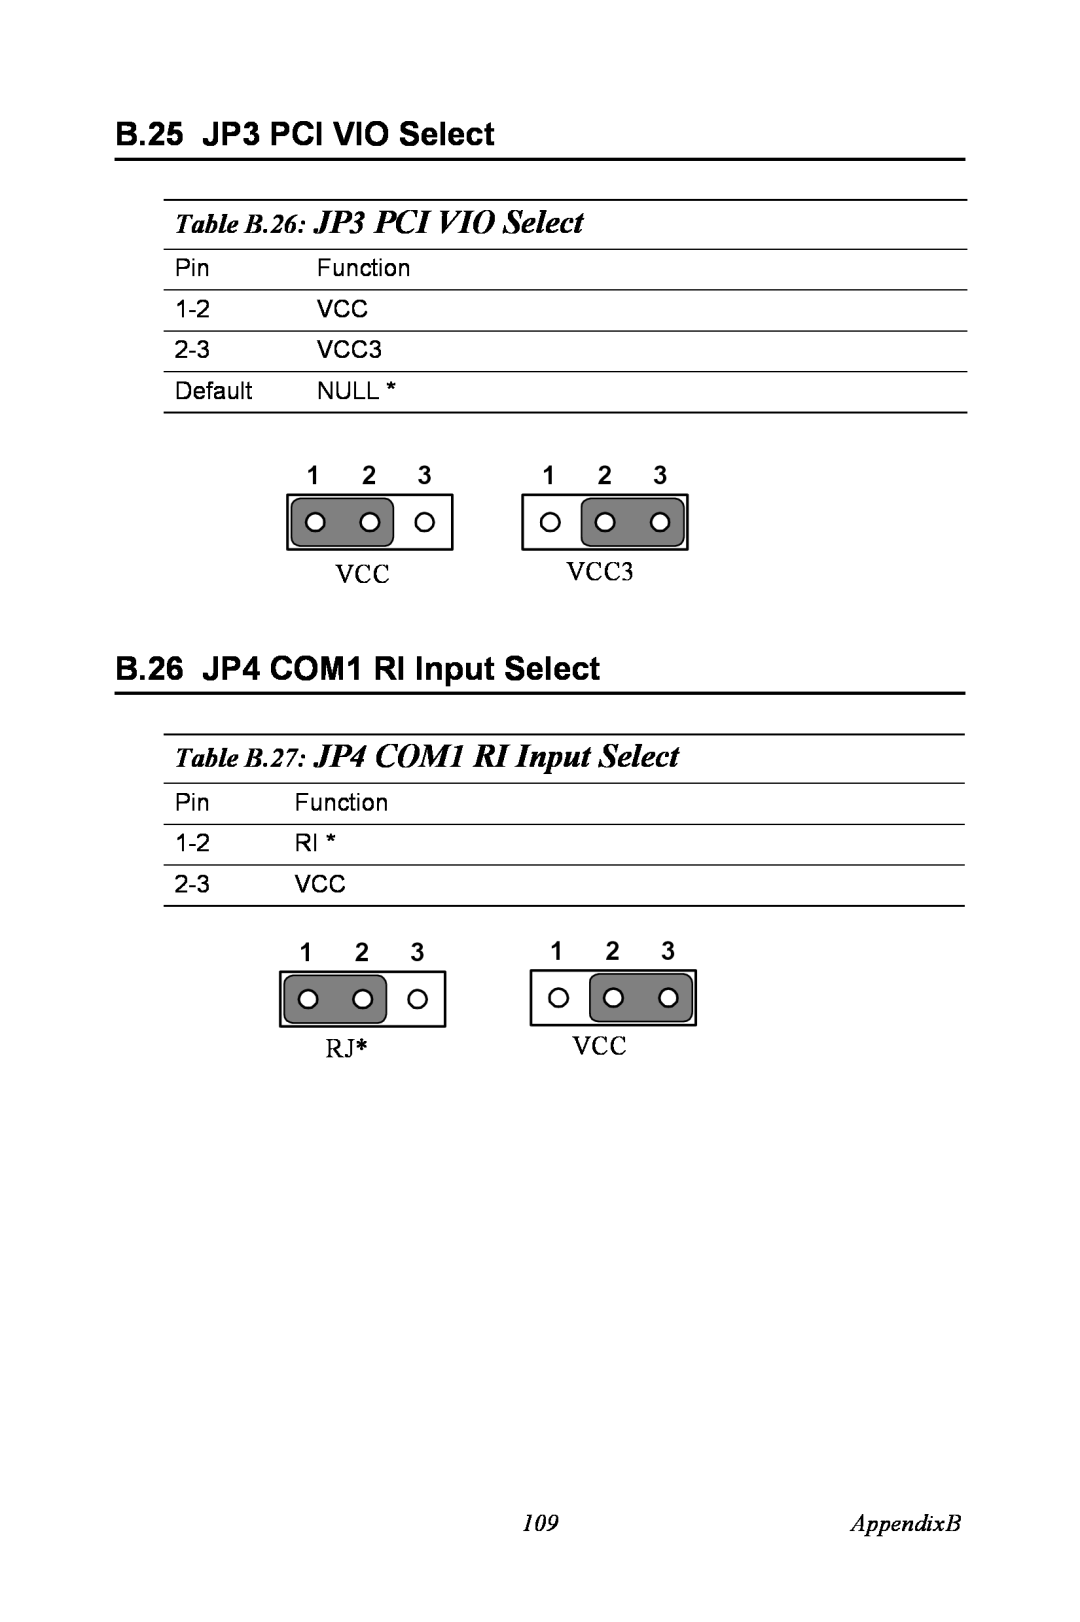 Intel PCM-3370 user manual B.25 JP3 PCI VIO Select, Table B.26 JP3 PCI VIO Select, B.26 JP4 COM1 RI Input Select, AppendixB 